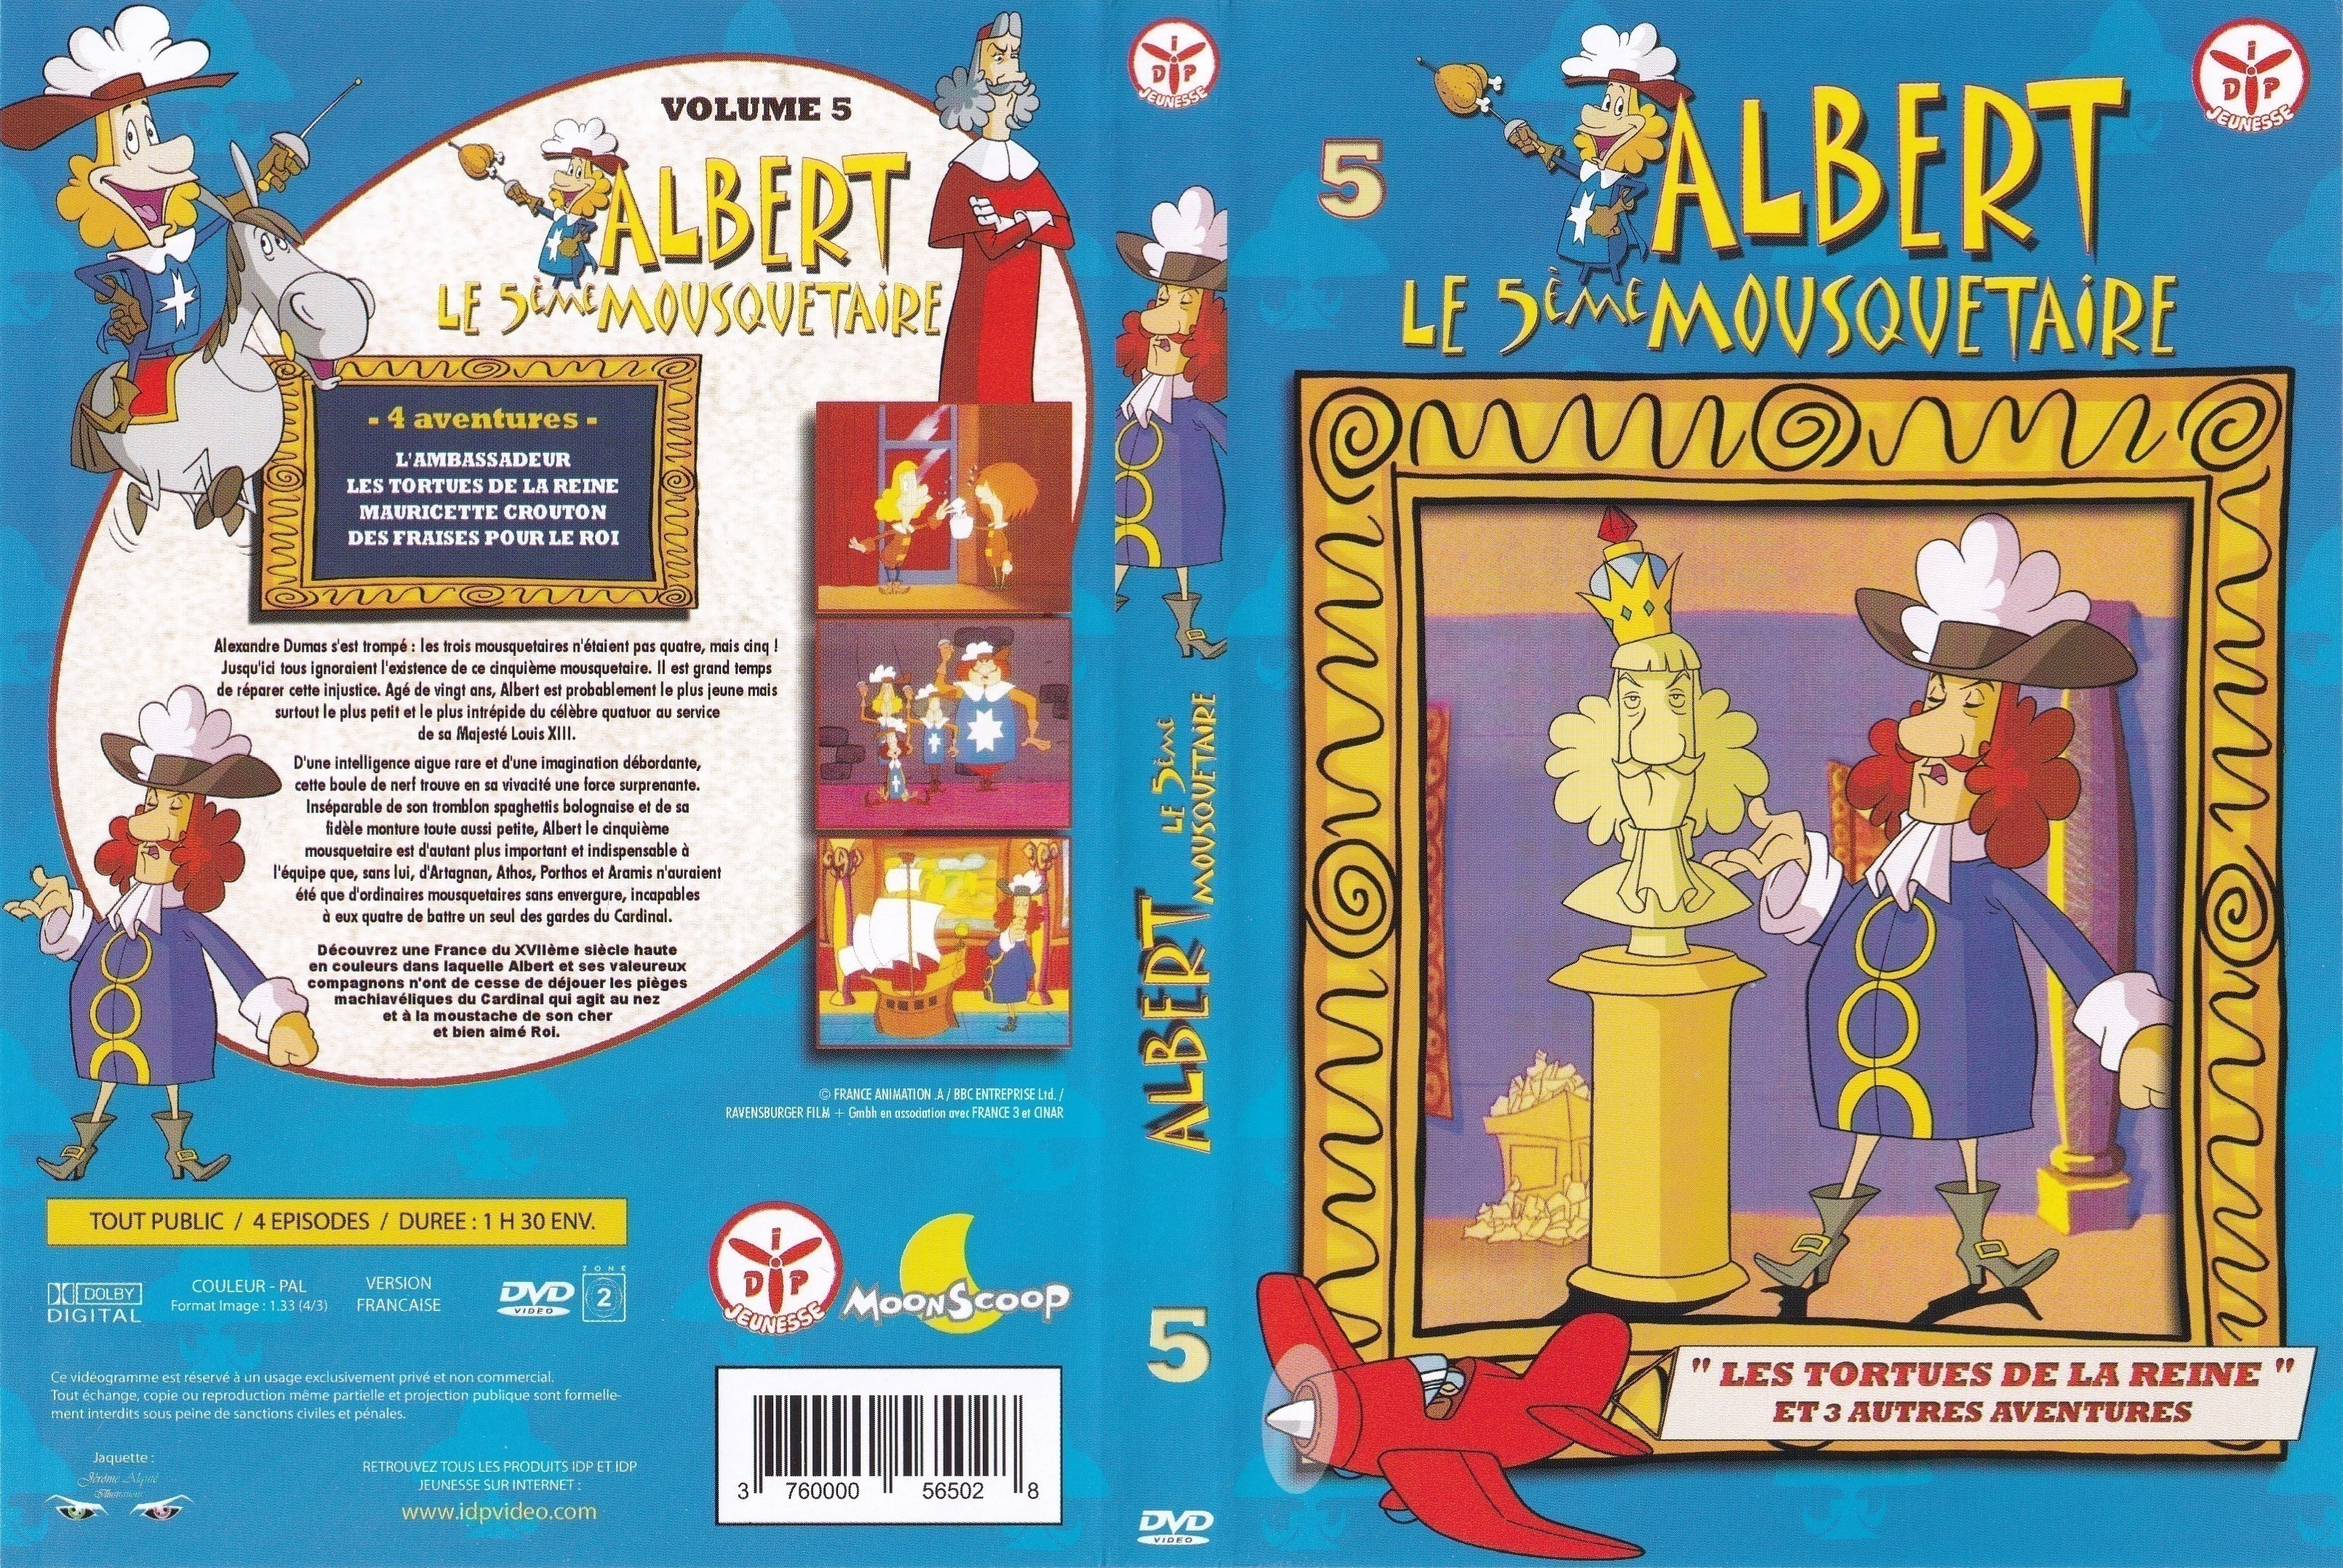 Jaquette DVD Albert le 5 me mousquetaire vol 5